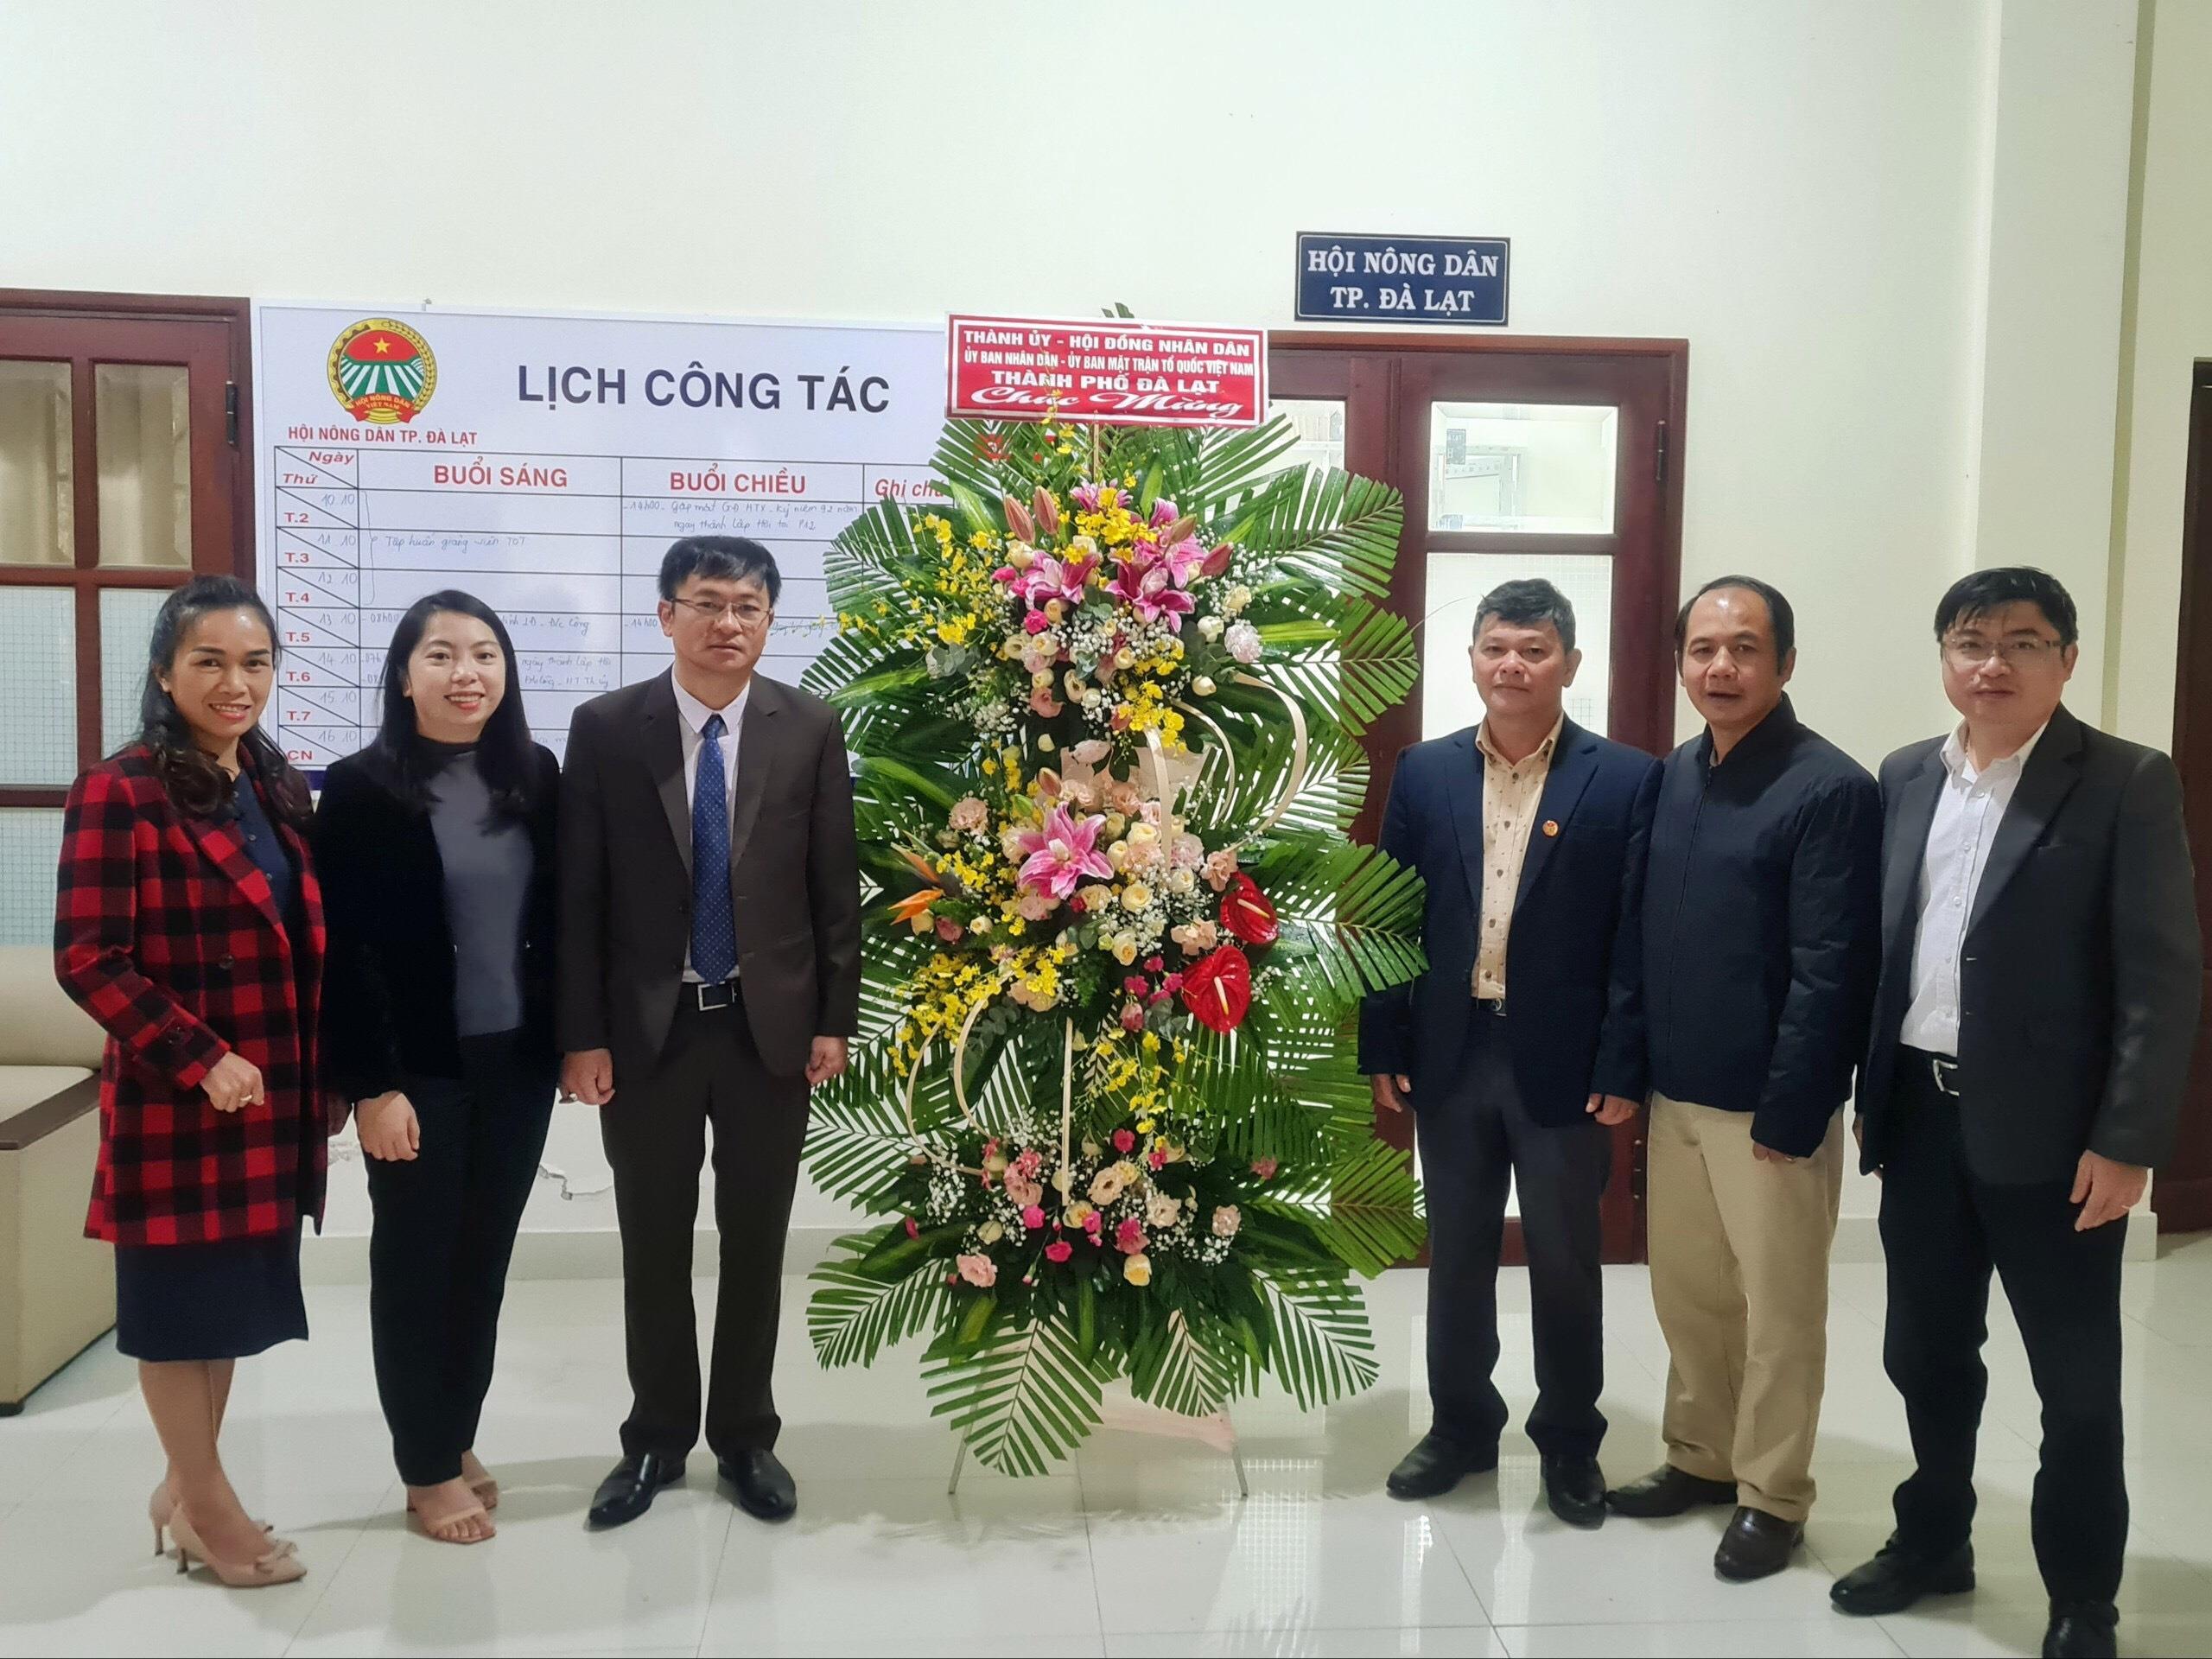 Đồng chí Đặng Quang Tú - Phó Bí thư Thường trực Thành ủy Thăm chúc mừng Hội Nông Dân thành phố